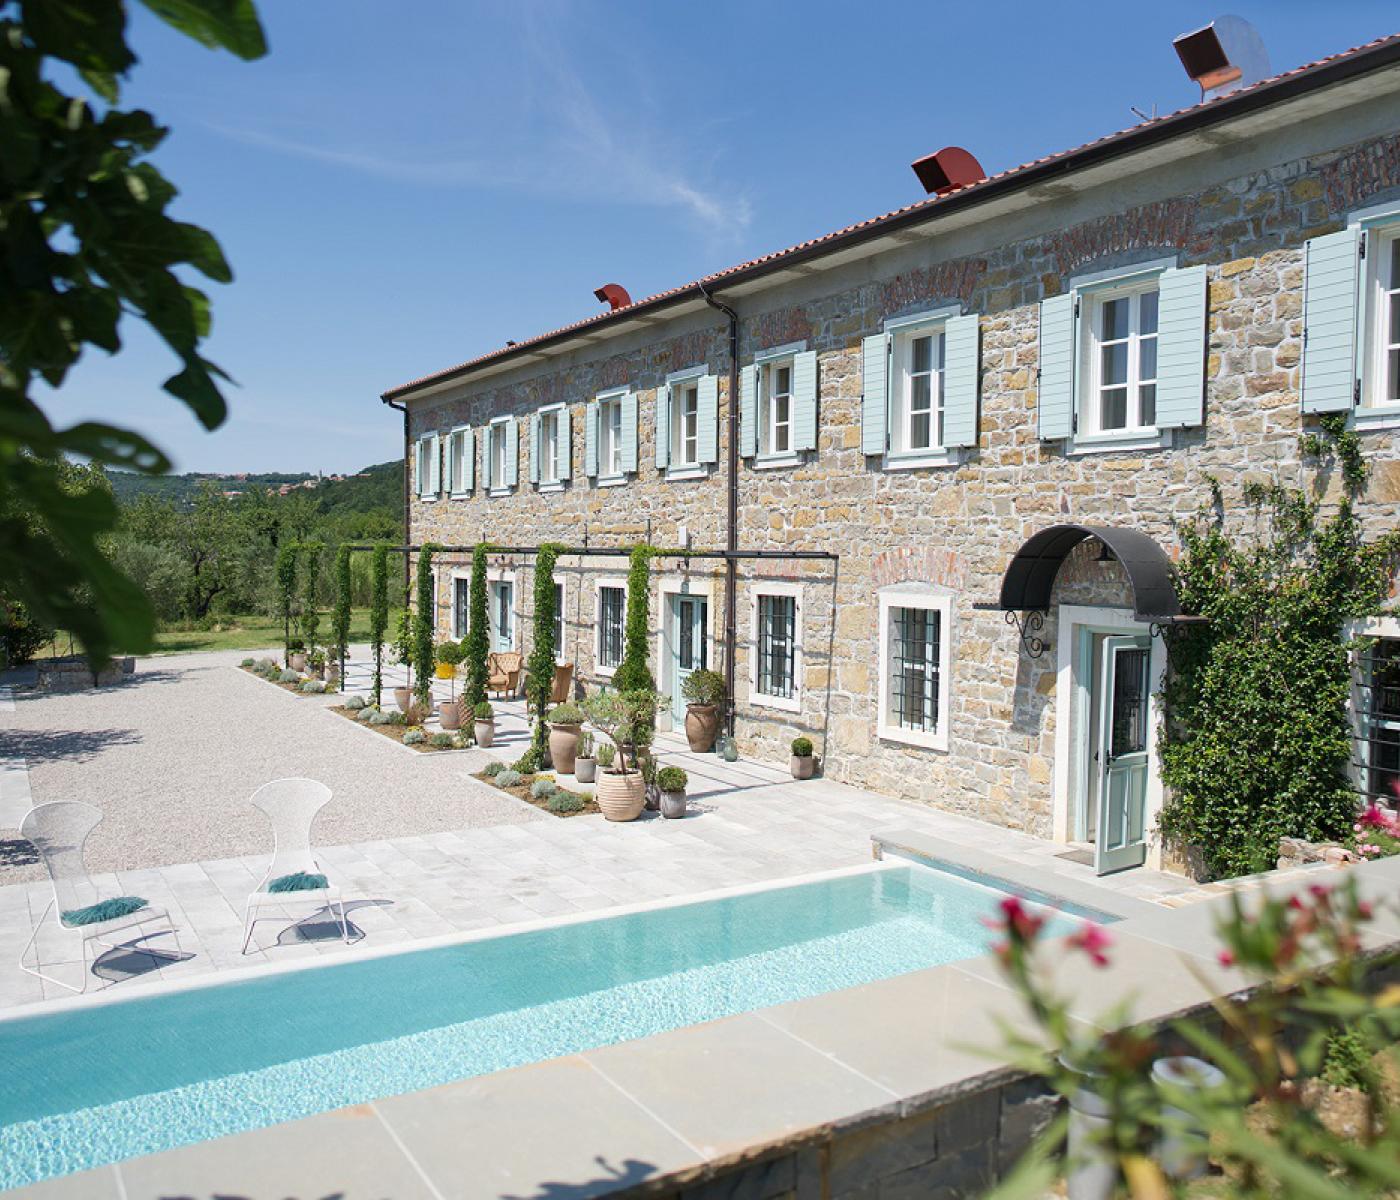 Blick auf mediterane Villa mit Pool in Slowenien